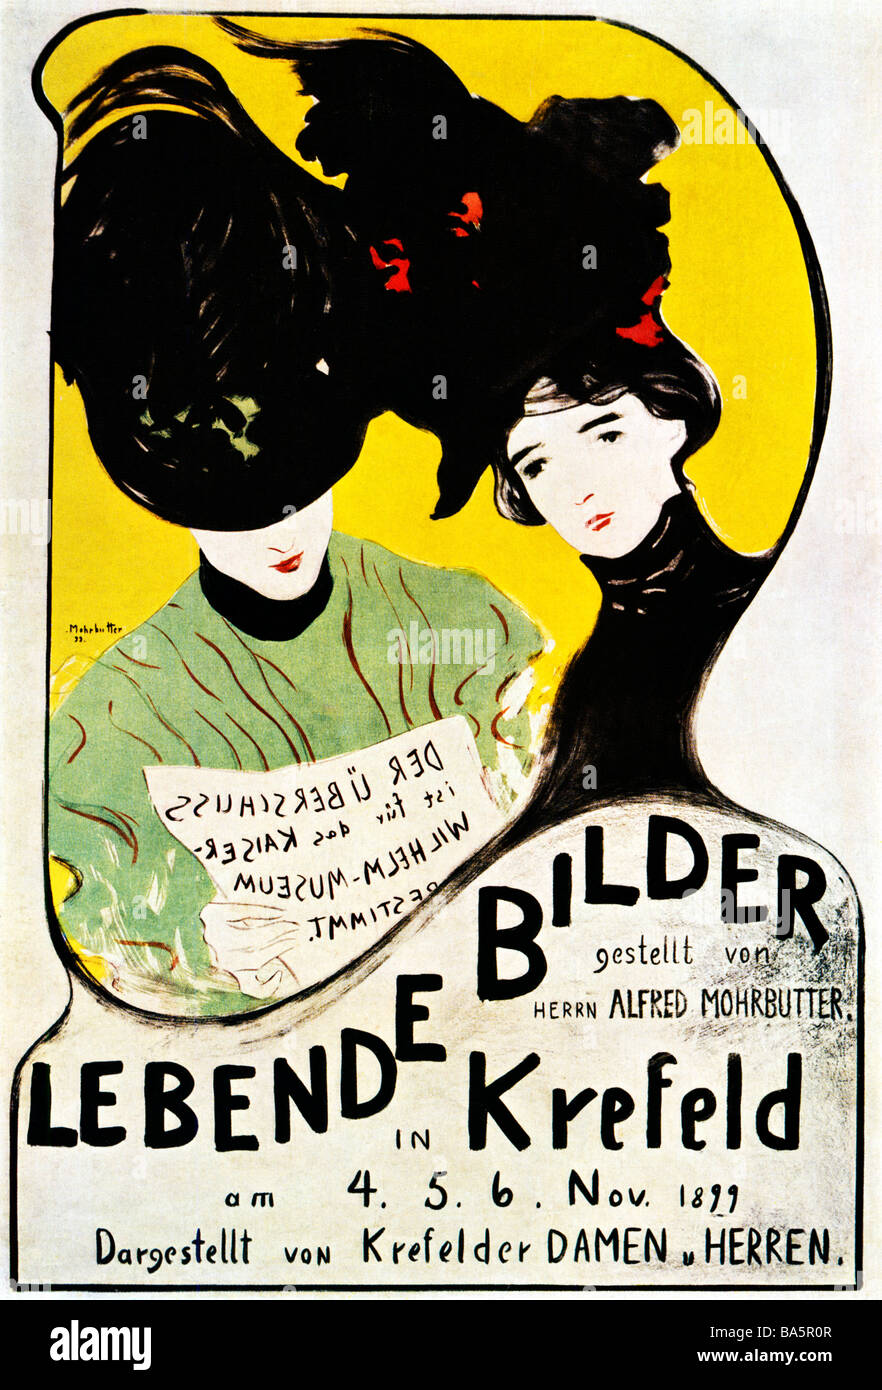 Lebende Bilder 1899 Jugendstil Poster von Alfred Mohrbutter für eine Ausstellung mit lebenden Bildern von Männern und Frauen in Krefeld Stockfoto